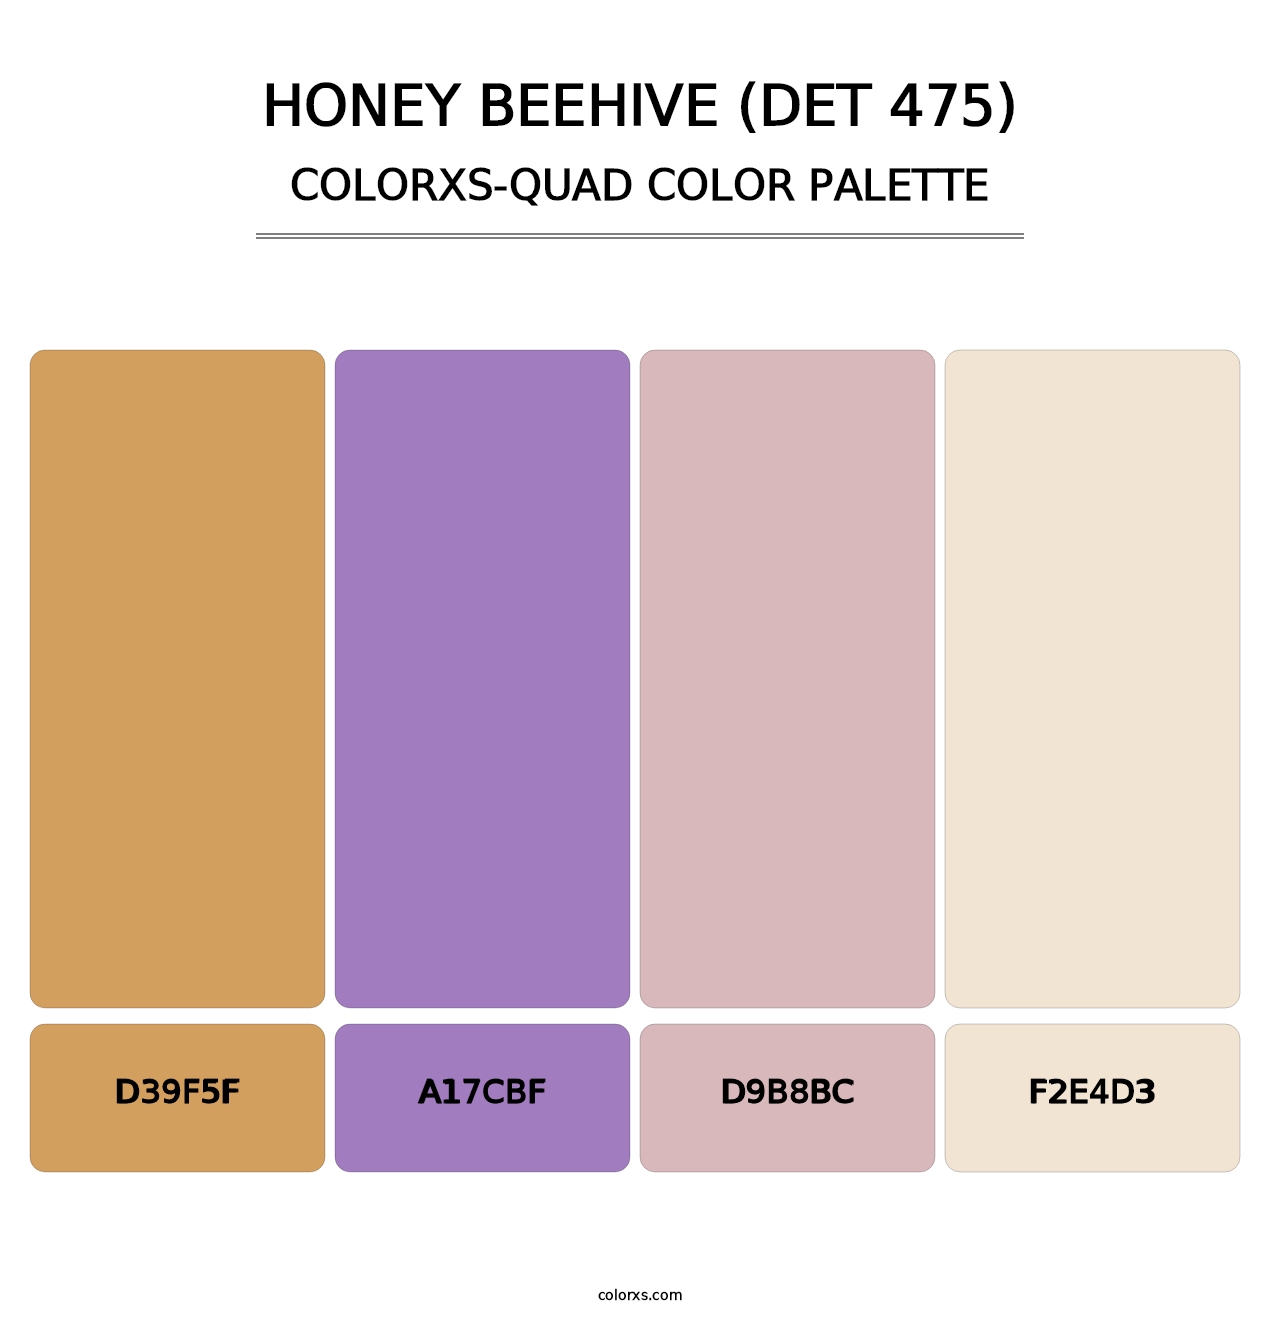 Honey Beehive (DET 475) - Colorxs Quad Palette